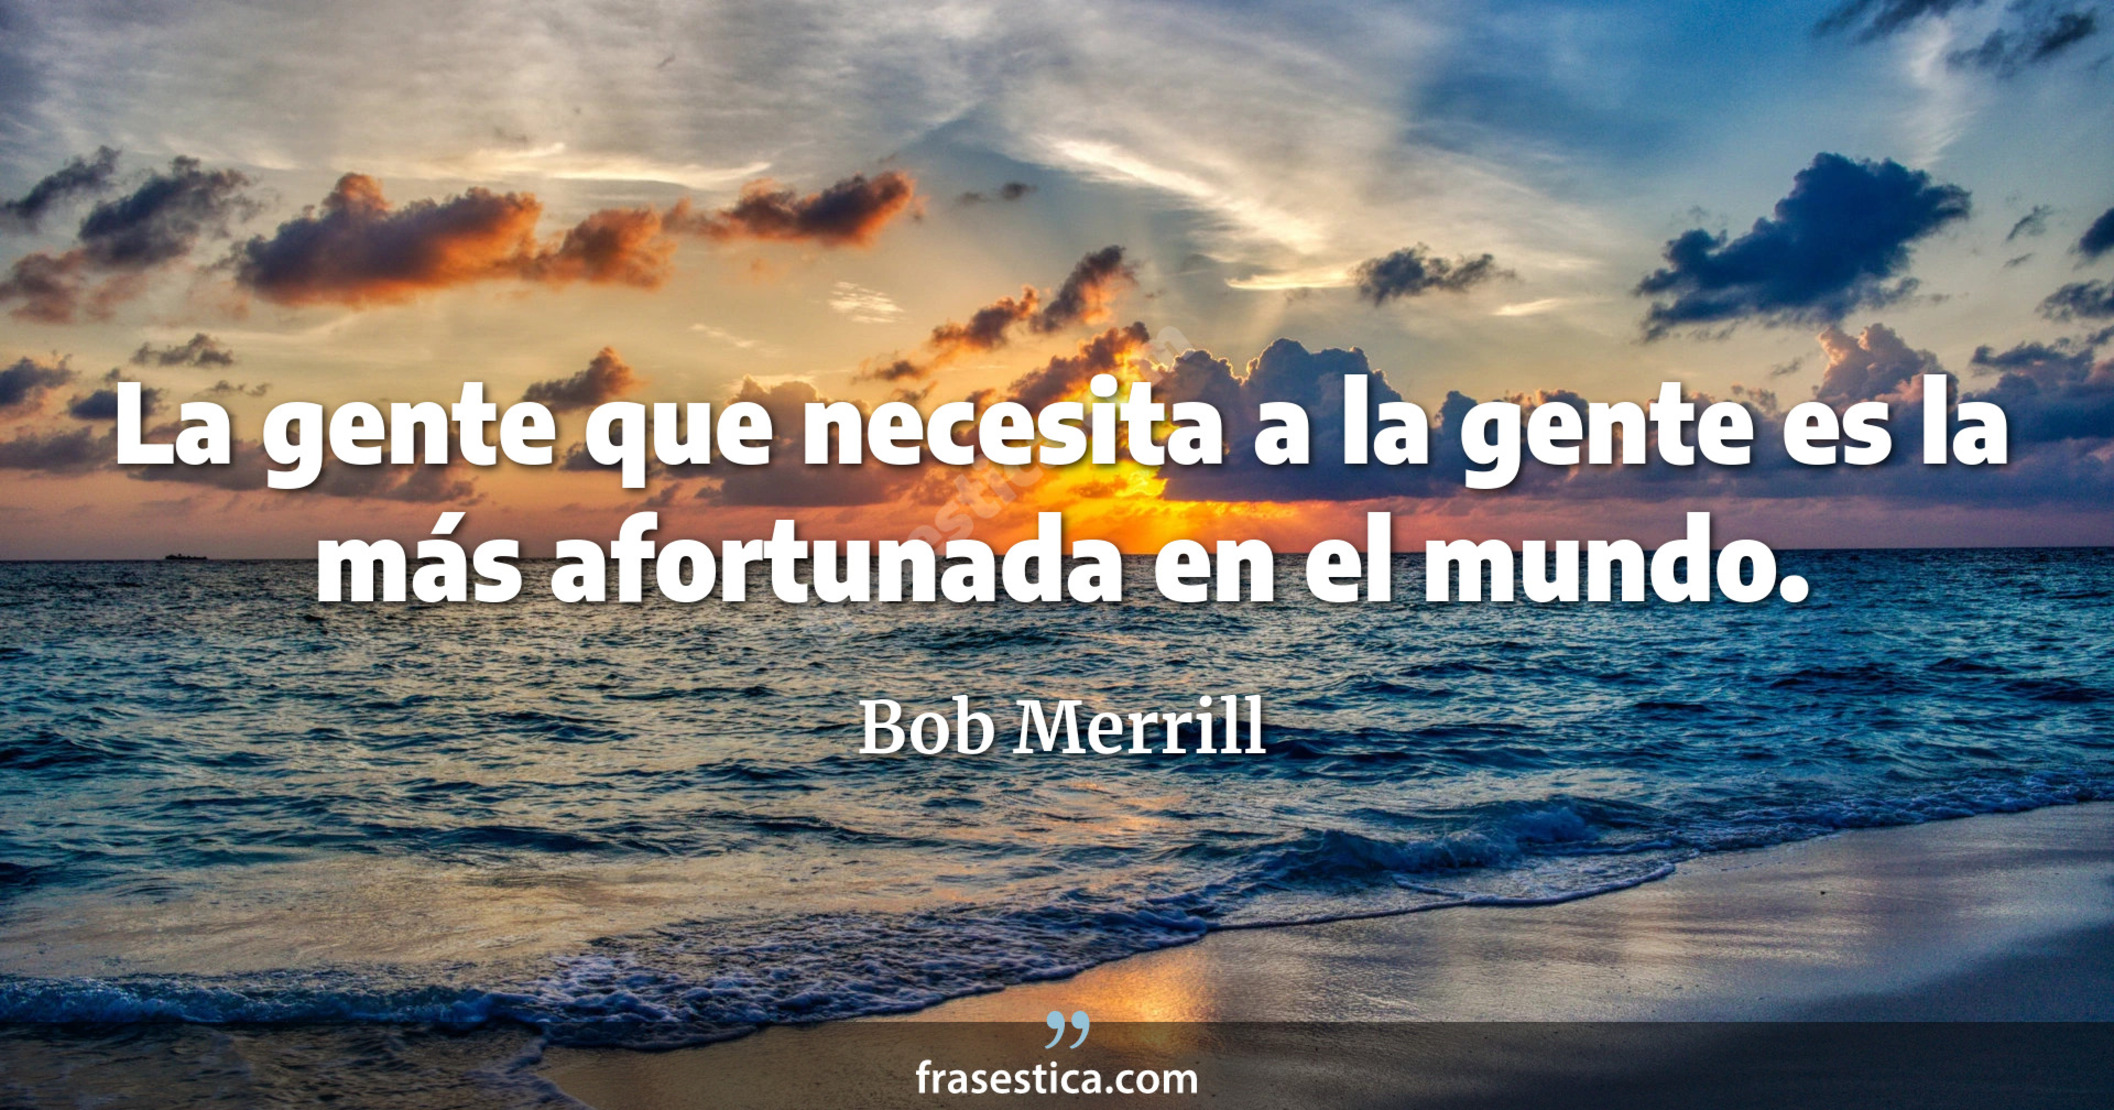 La gente que necesita a la gente es la más afortunada en el mundo. - Bob Merrill